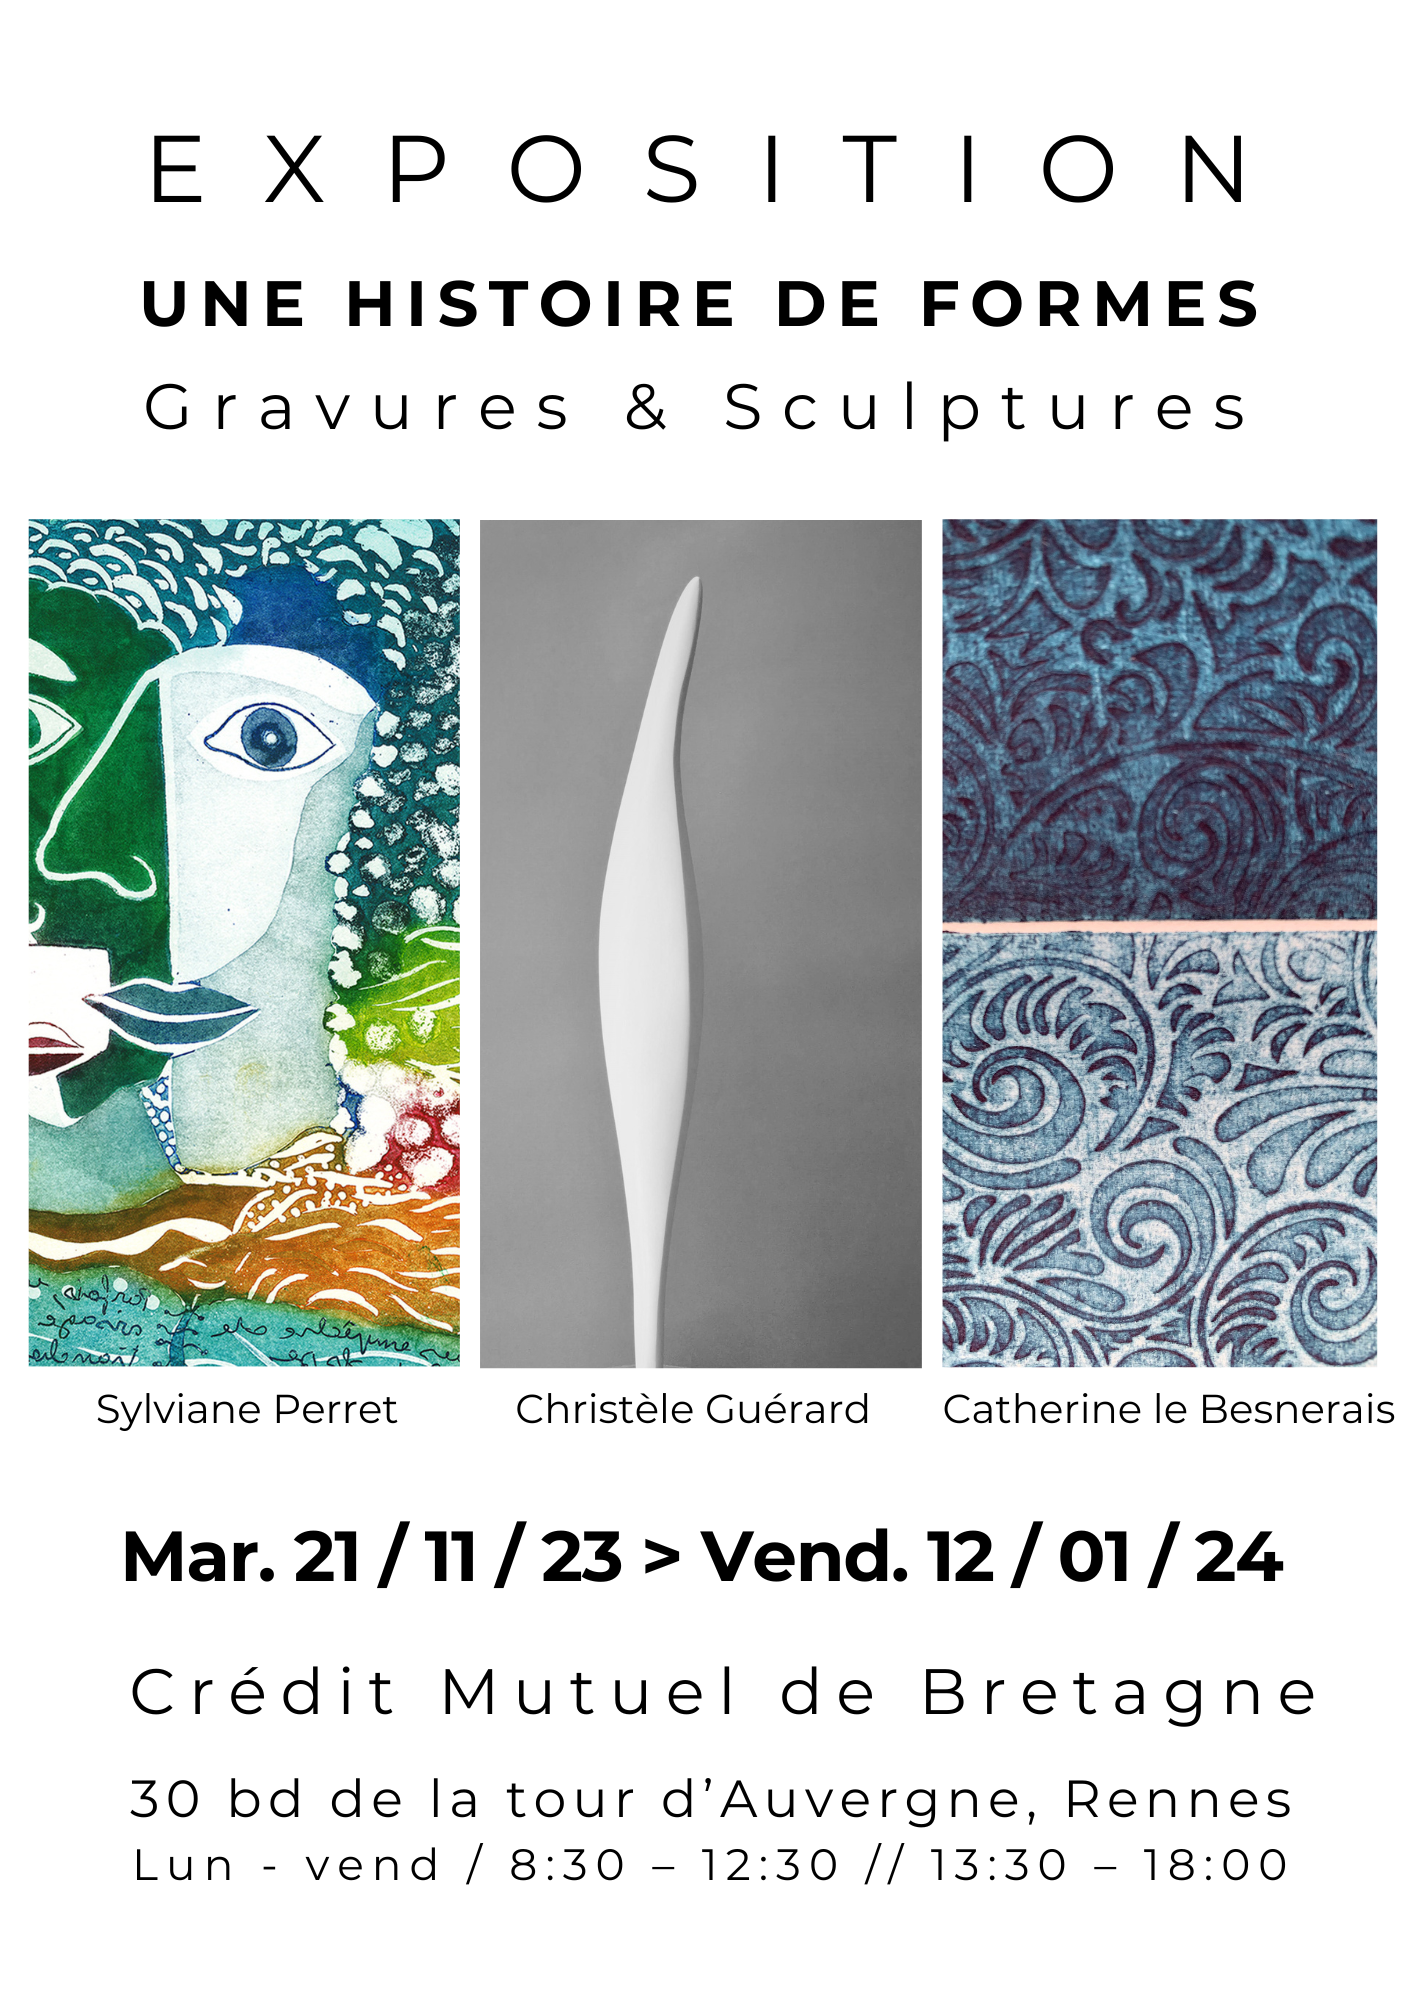 RENNES EXPO / "Une histoire de formes", gravures & sculptures. CMB, 21 nov > 12 janv